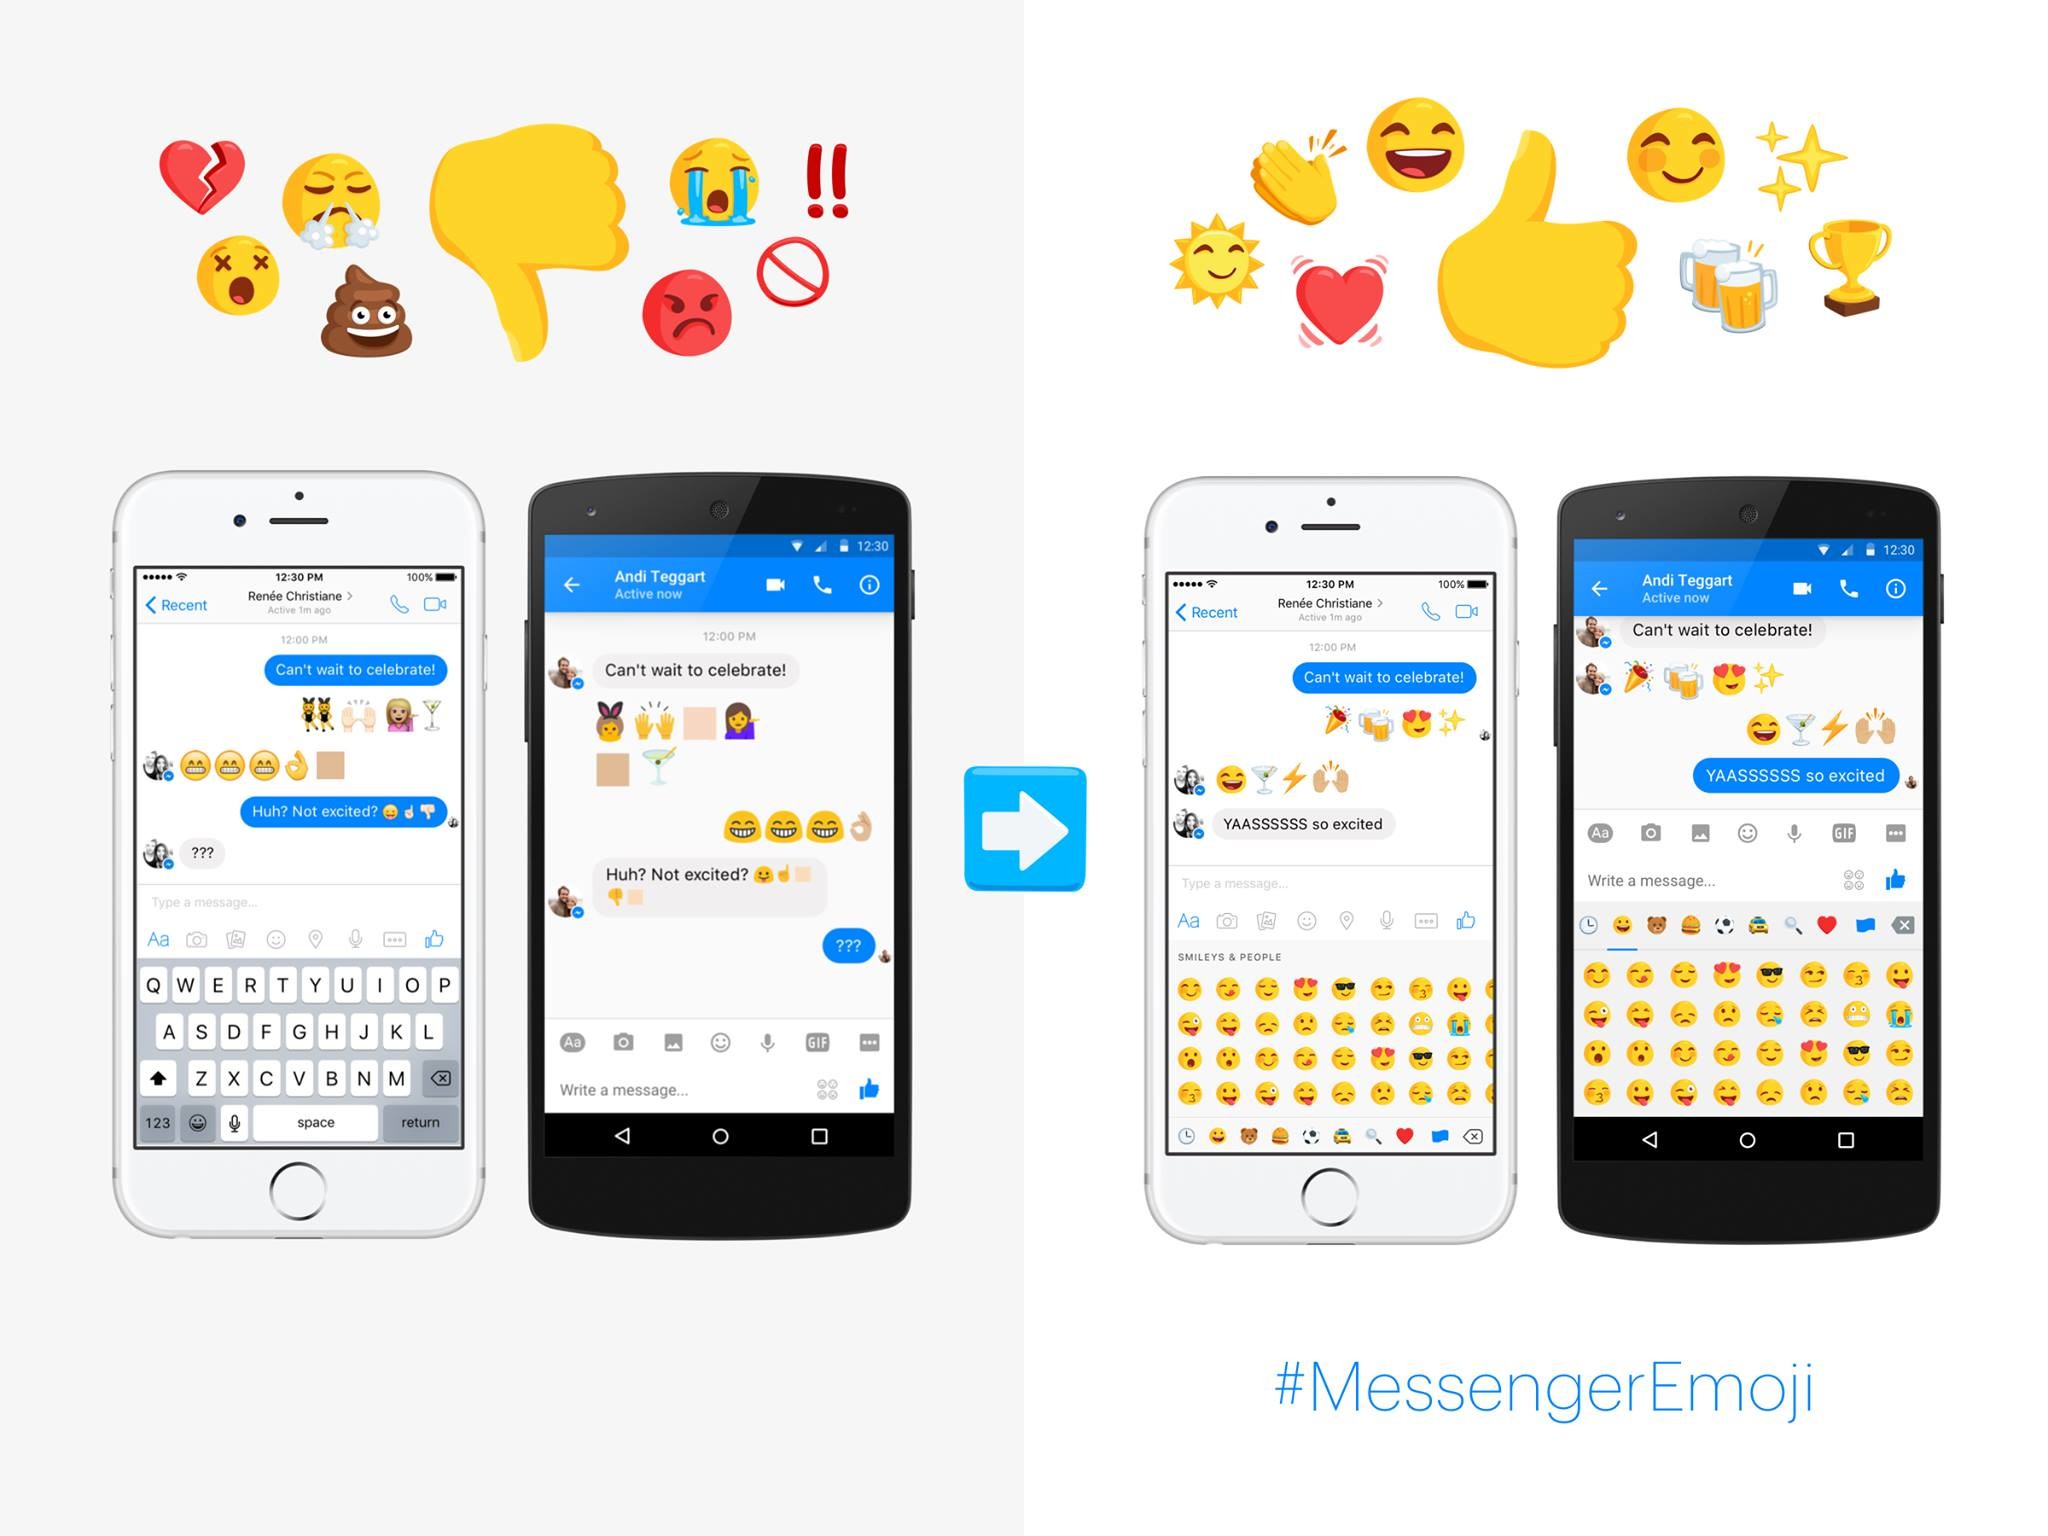 2048x1536 FAcebook Messenger emoji image 002. “